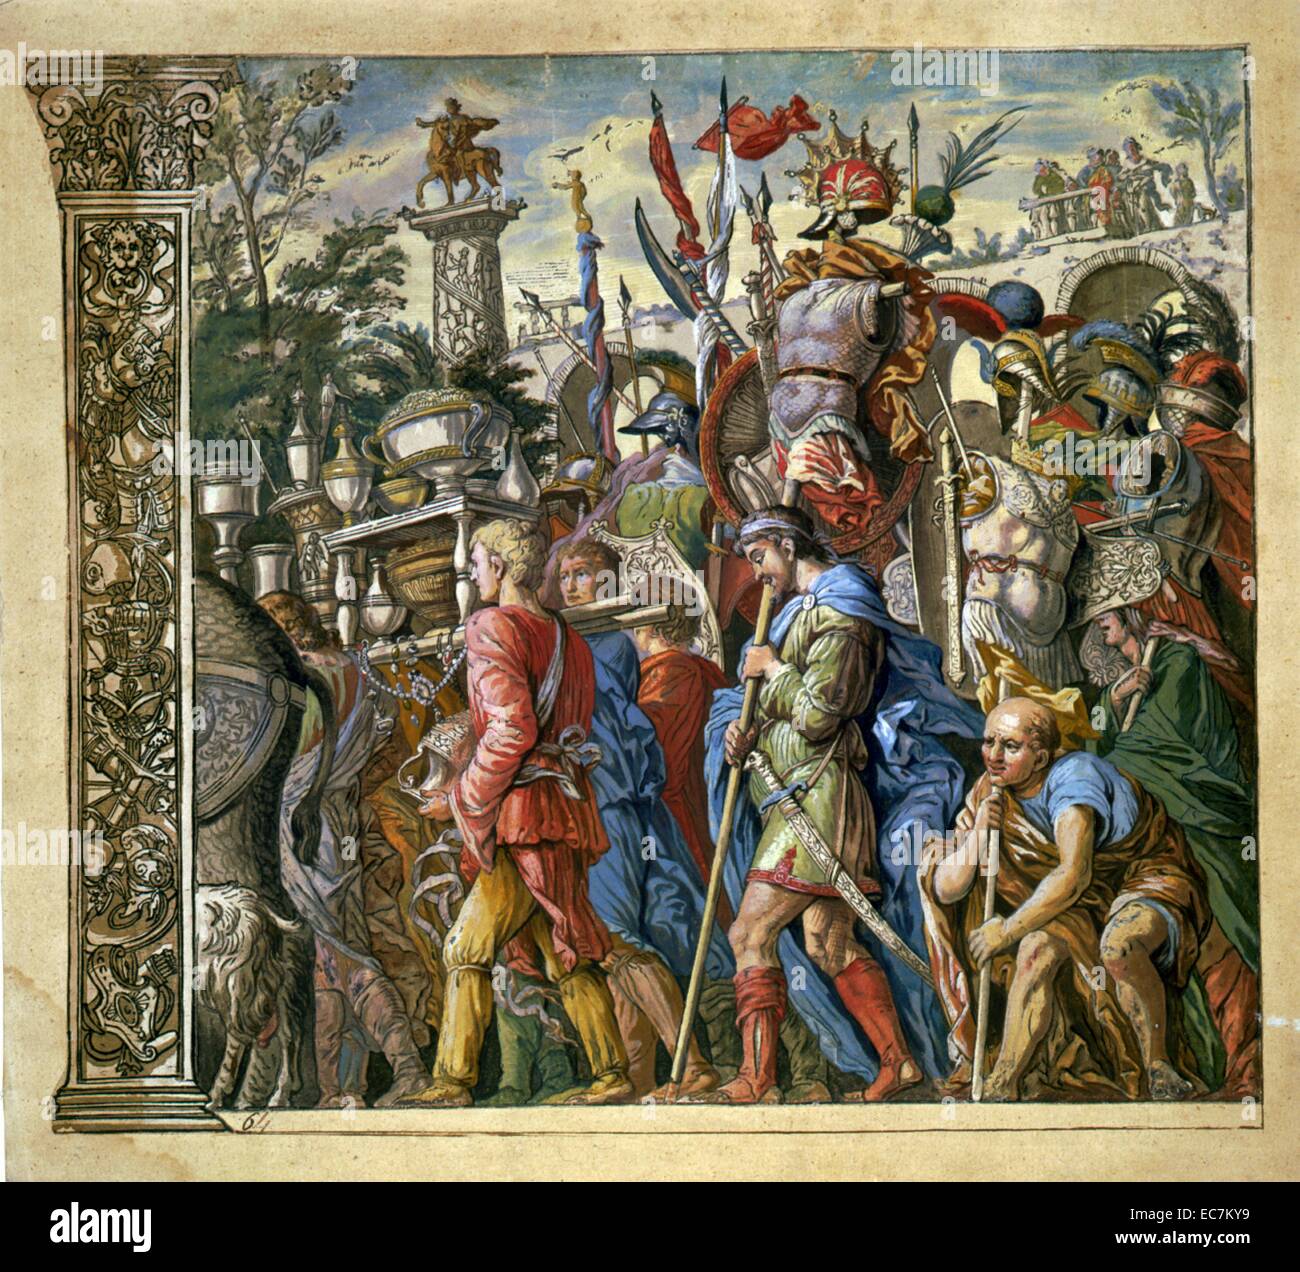 Le triomphe de Jules César par Andrea Andreani, 1599. Planche 6 de la série, montrant les gens en procession triomphale de Jules César Banque D'Images